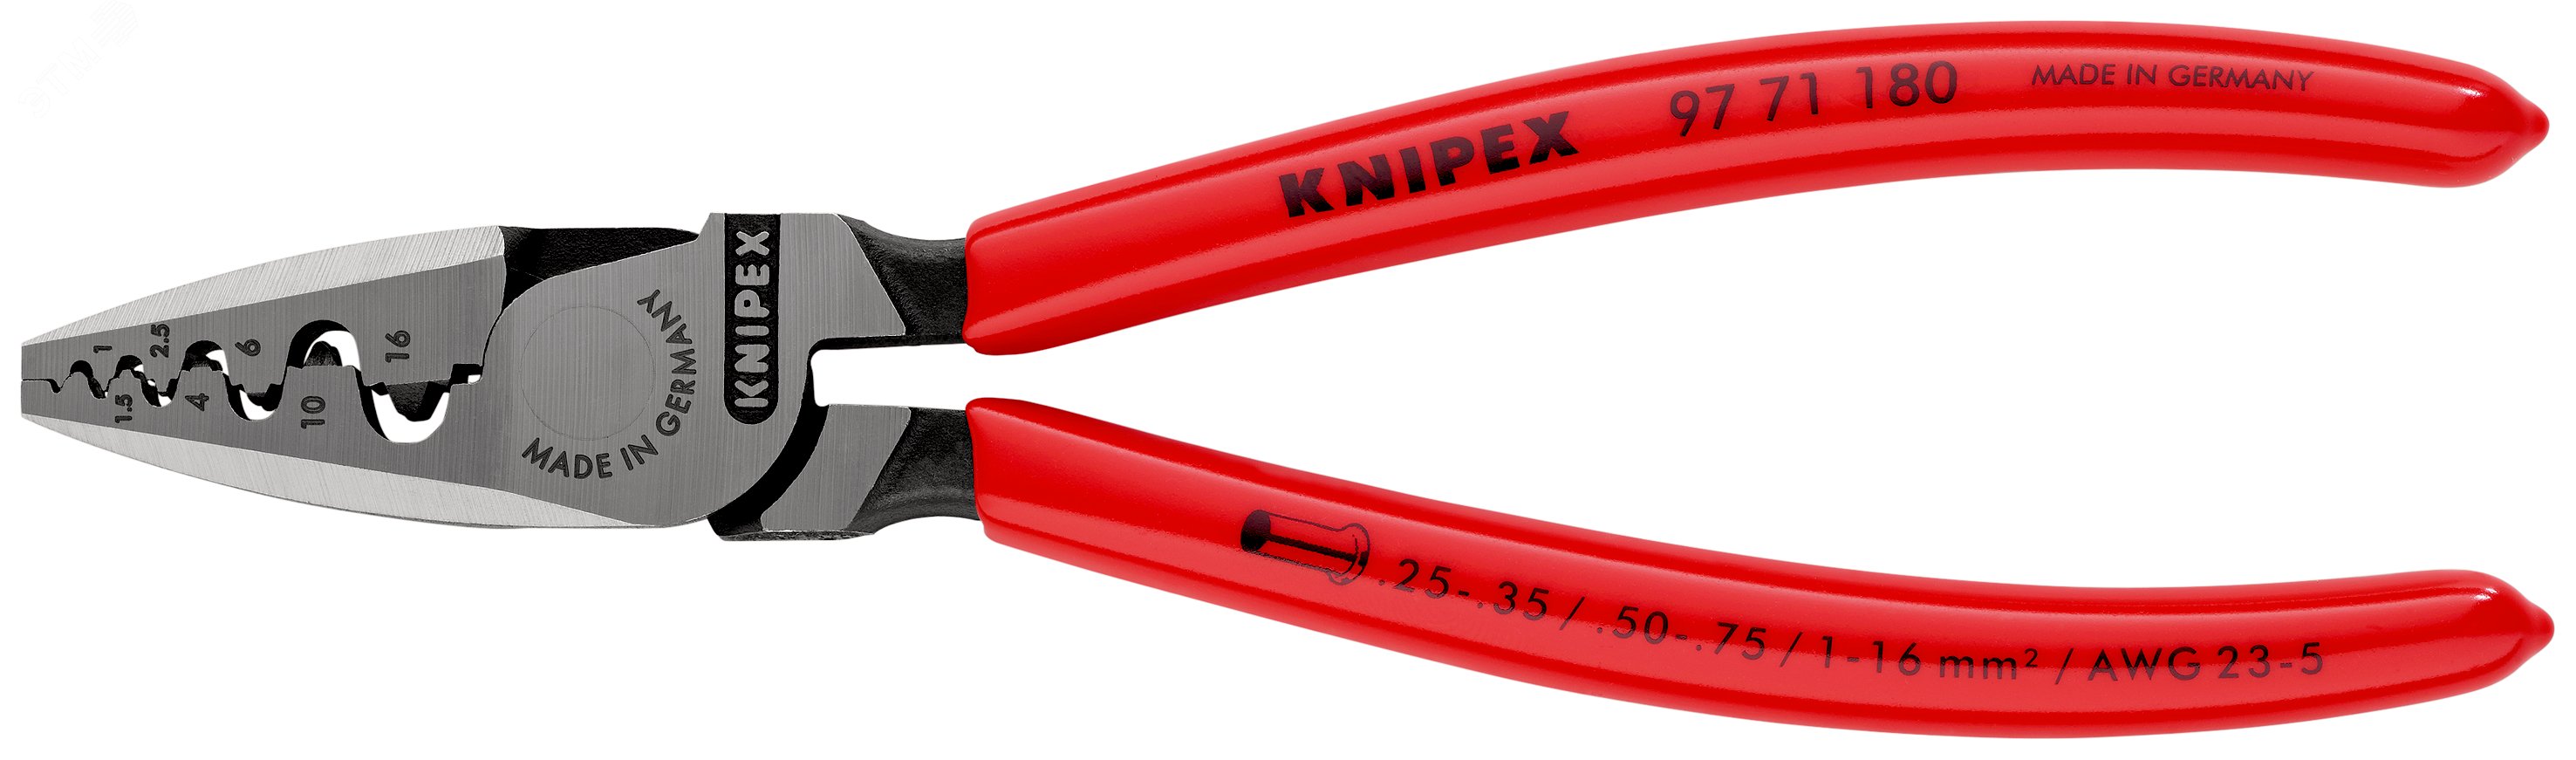 Пресс-клещи для обжима контактных гильз 9 гнезд 025-160мм (AWG 23-5) L=180мм обливные рукоятки блистер KN-9771180SB KNIPEX - превью 3